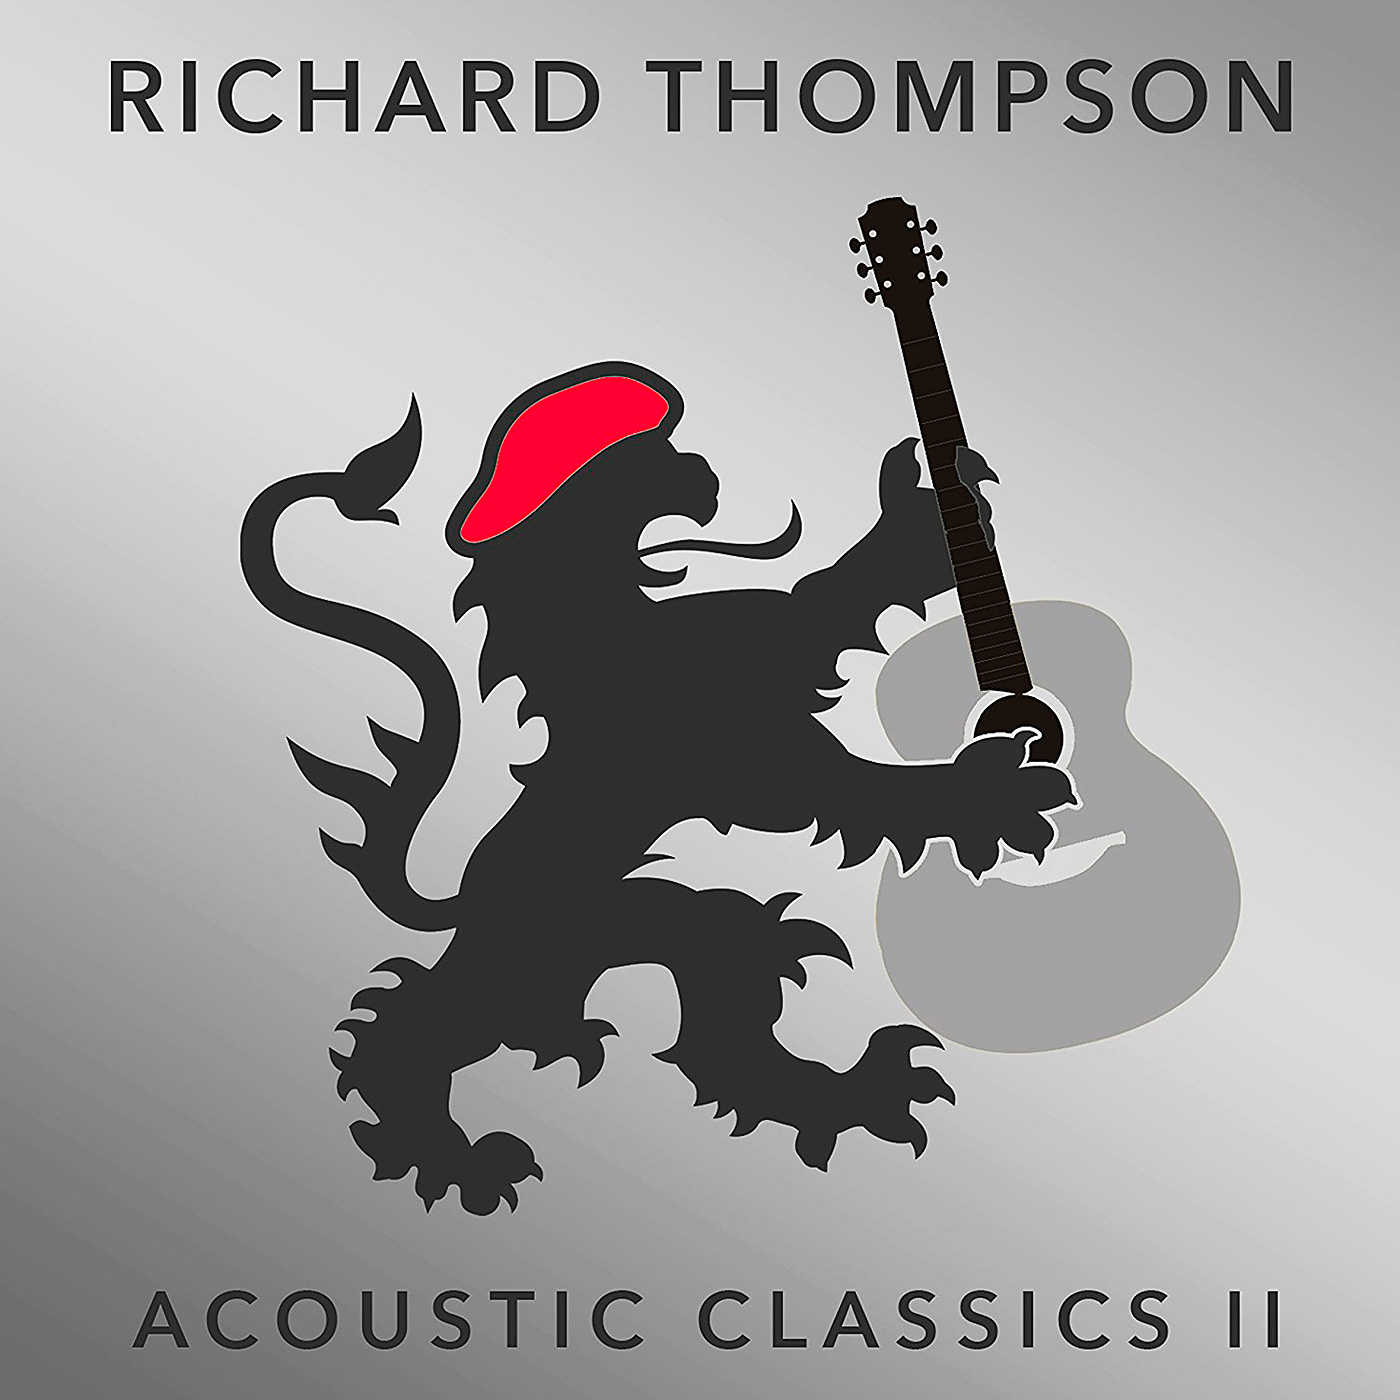 Richard Thompson – Acoustic Classics II (2017) [Qobuz FLAC 24bit/48kHz]